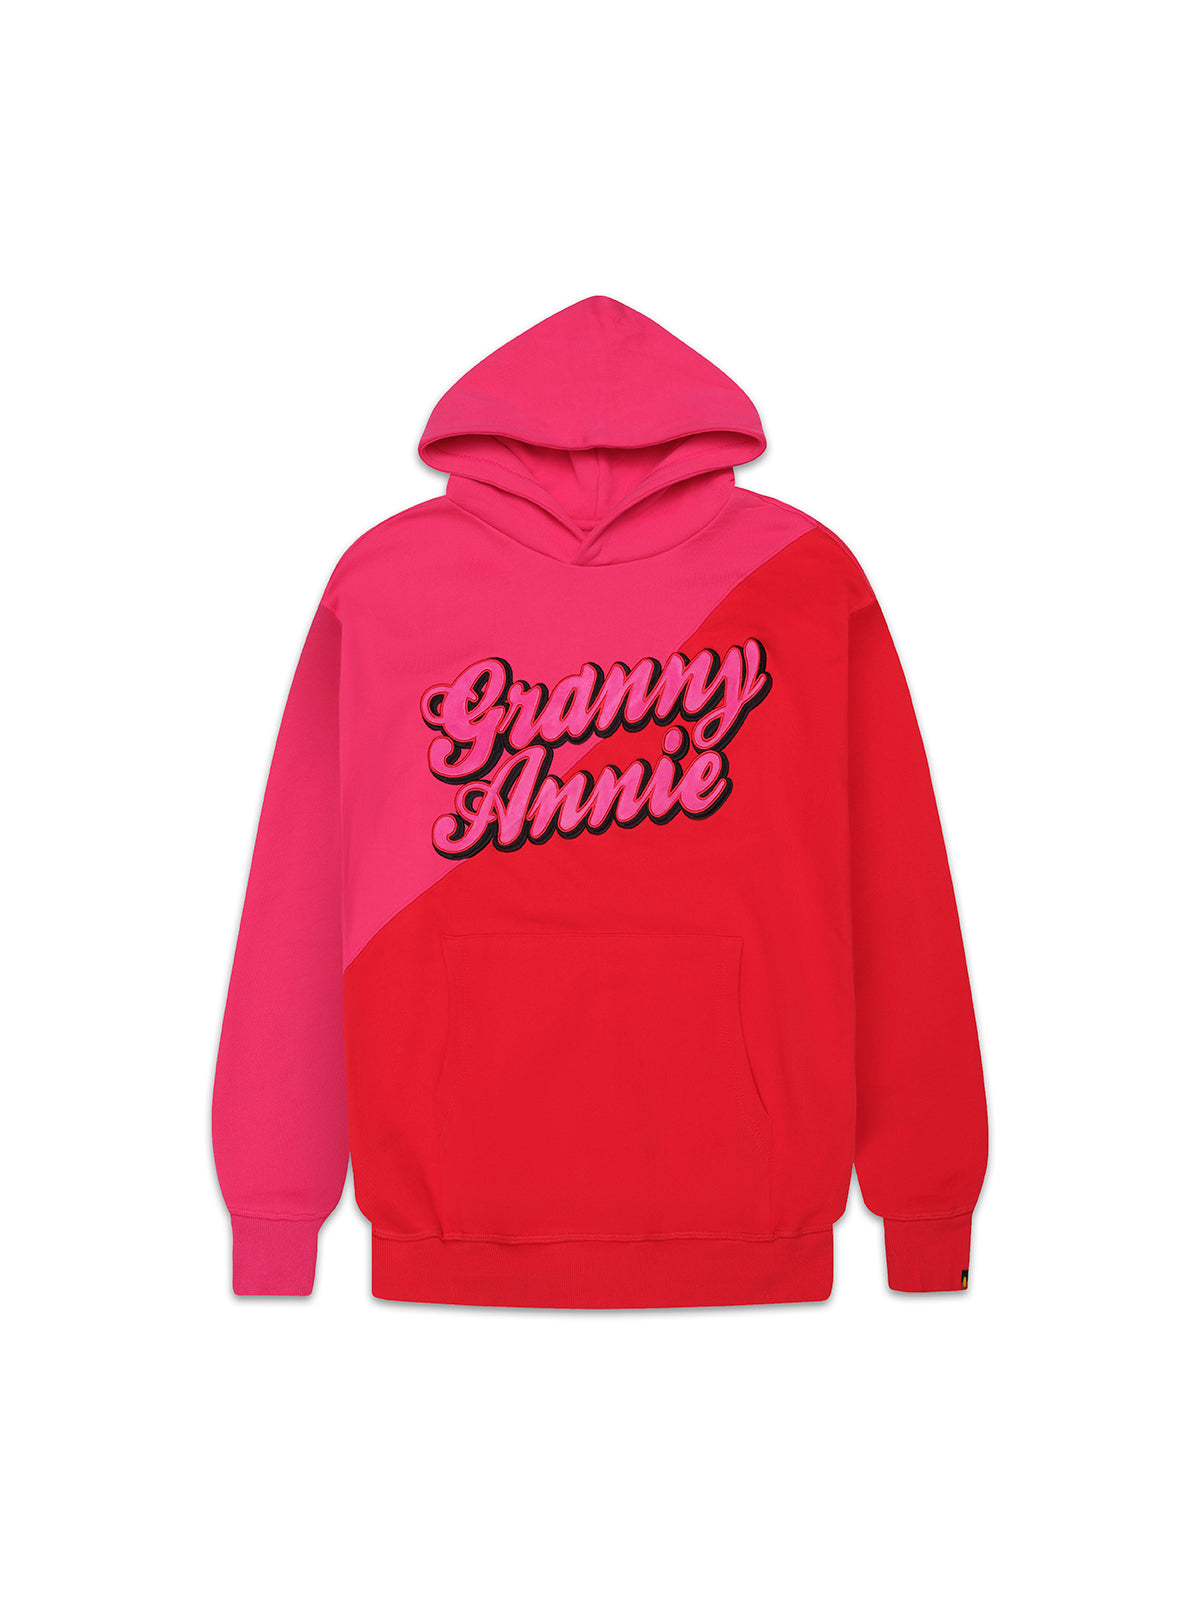 Granny Annie hoodie